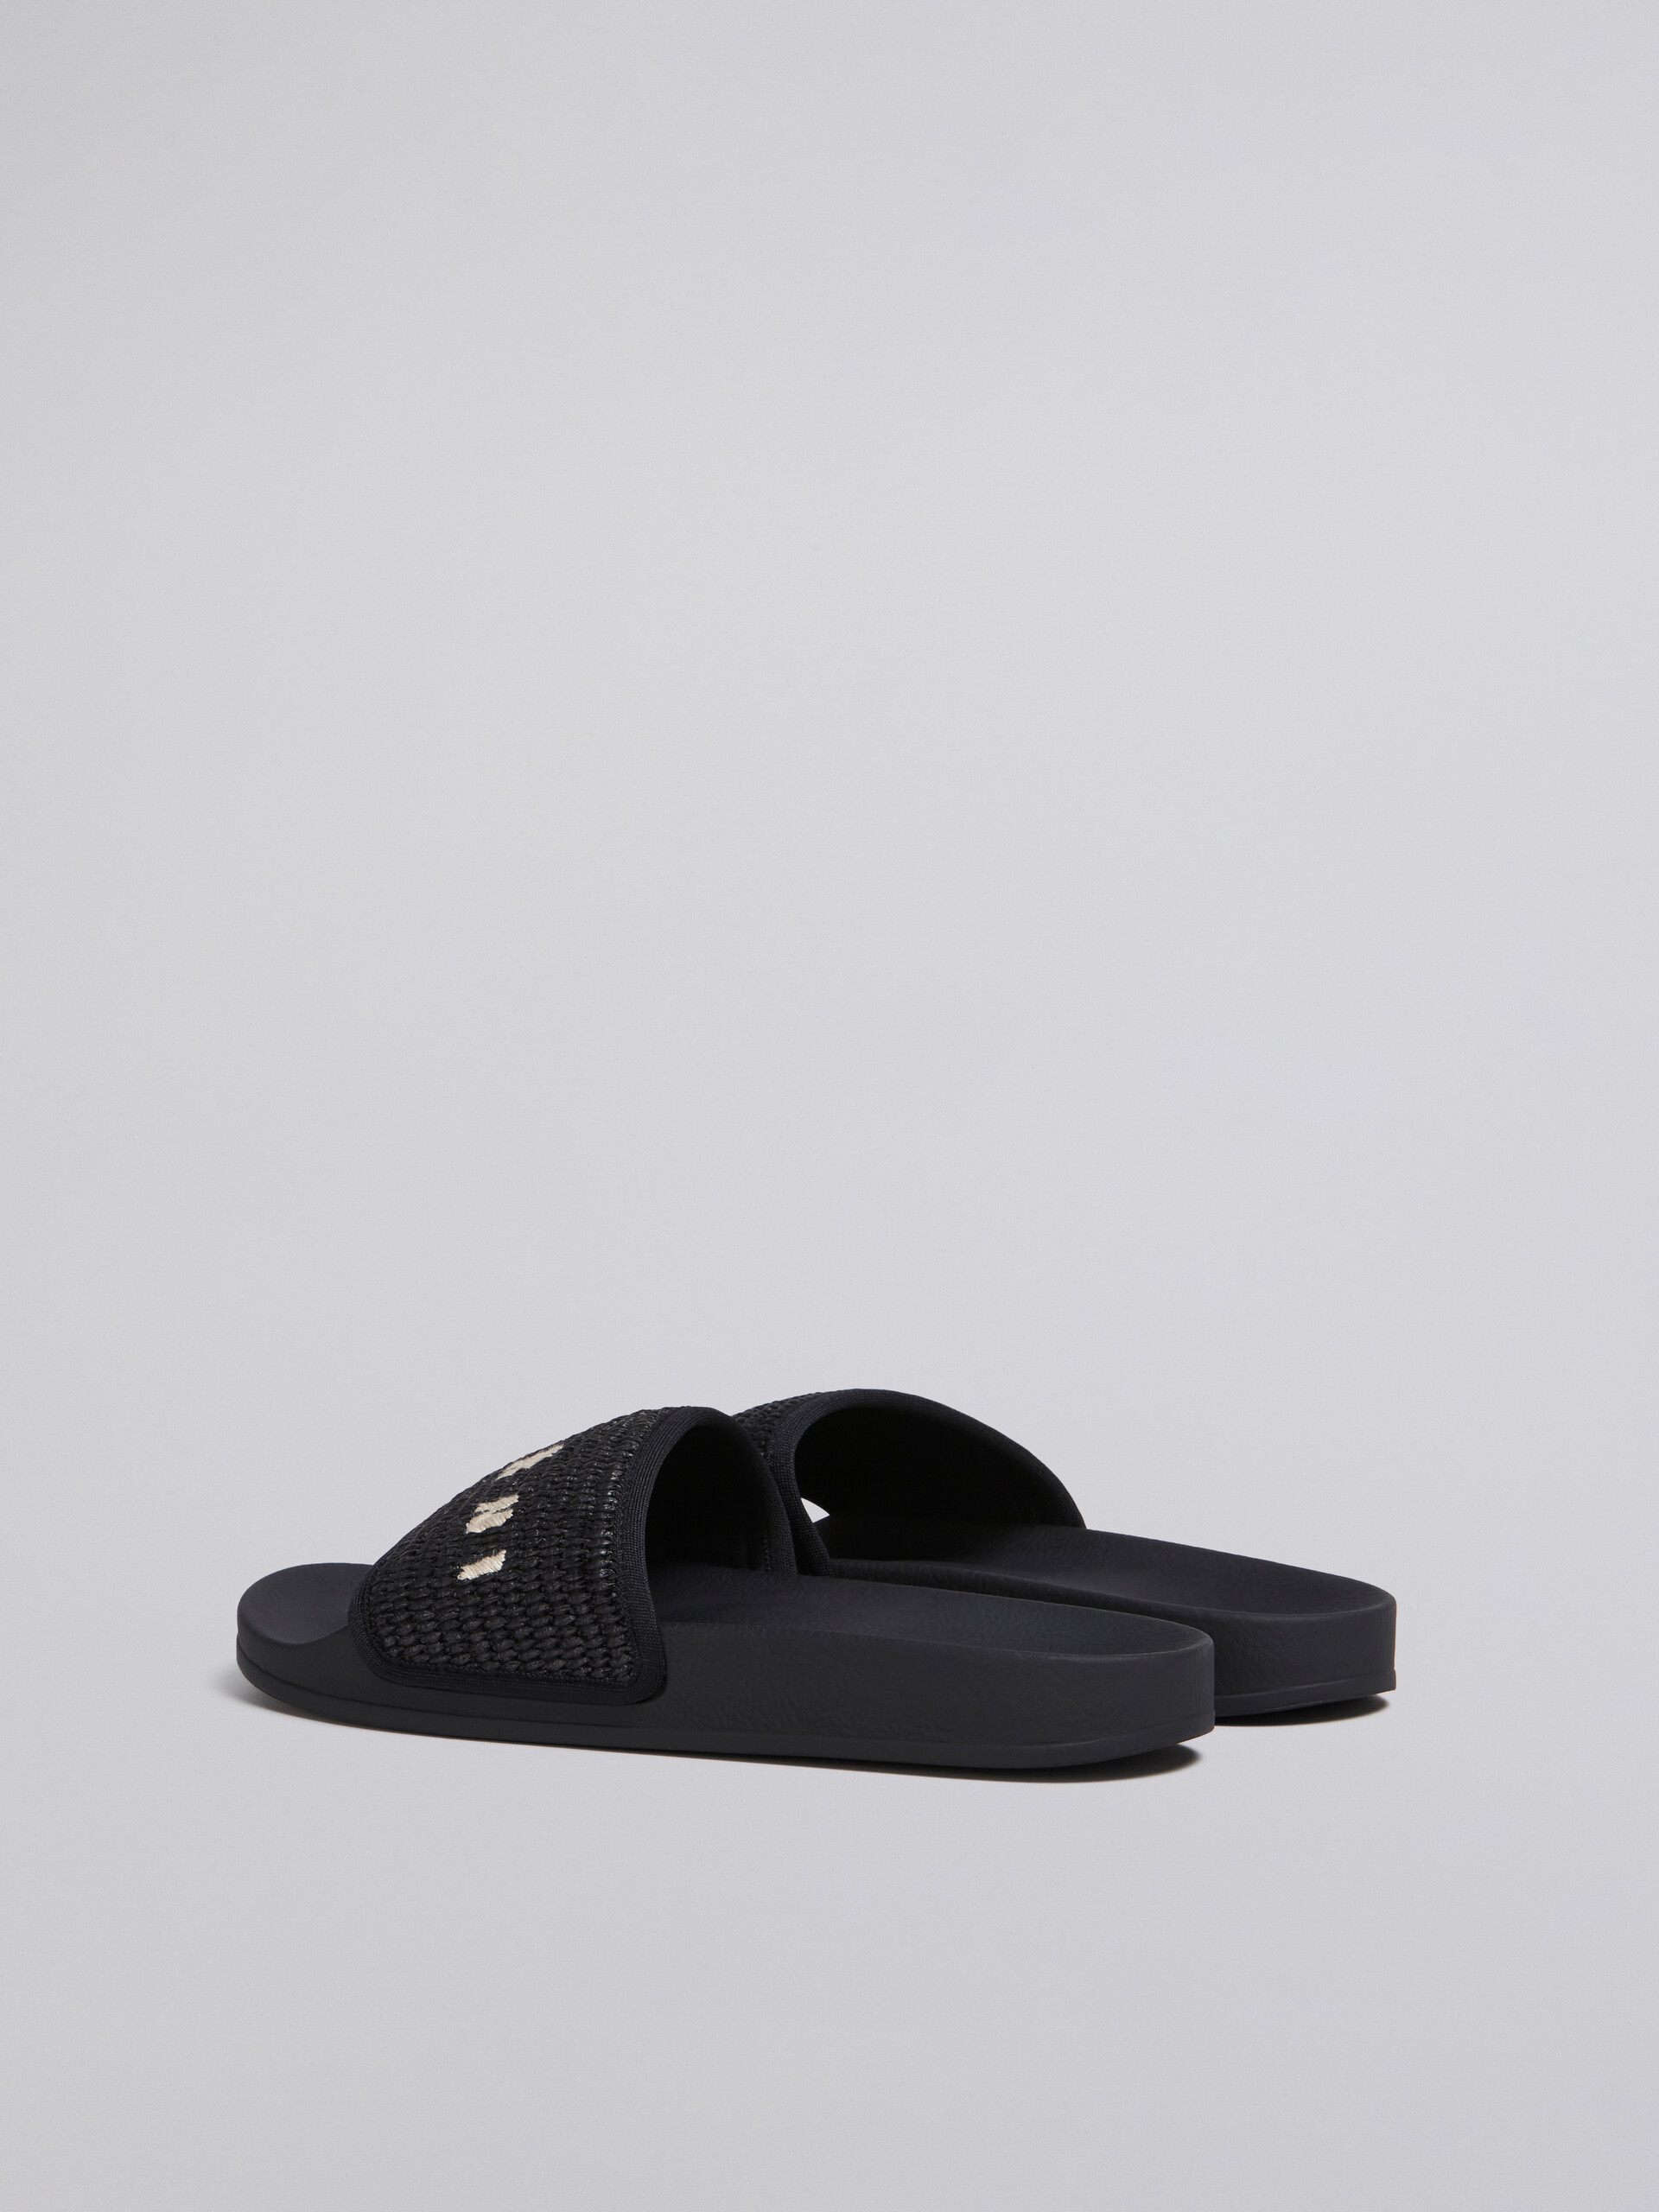 블랙 라피아 샌들 - Sandals - Image 3